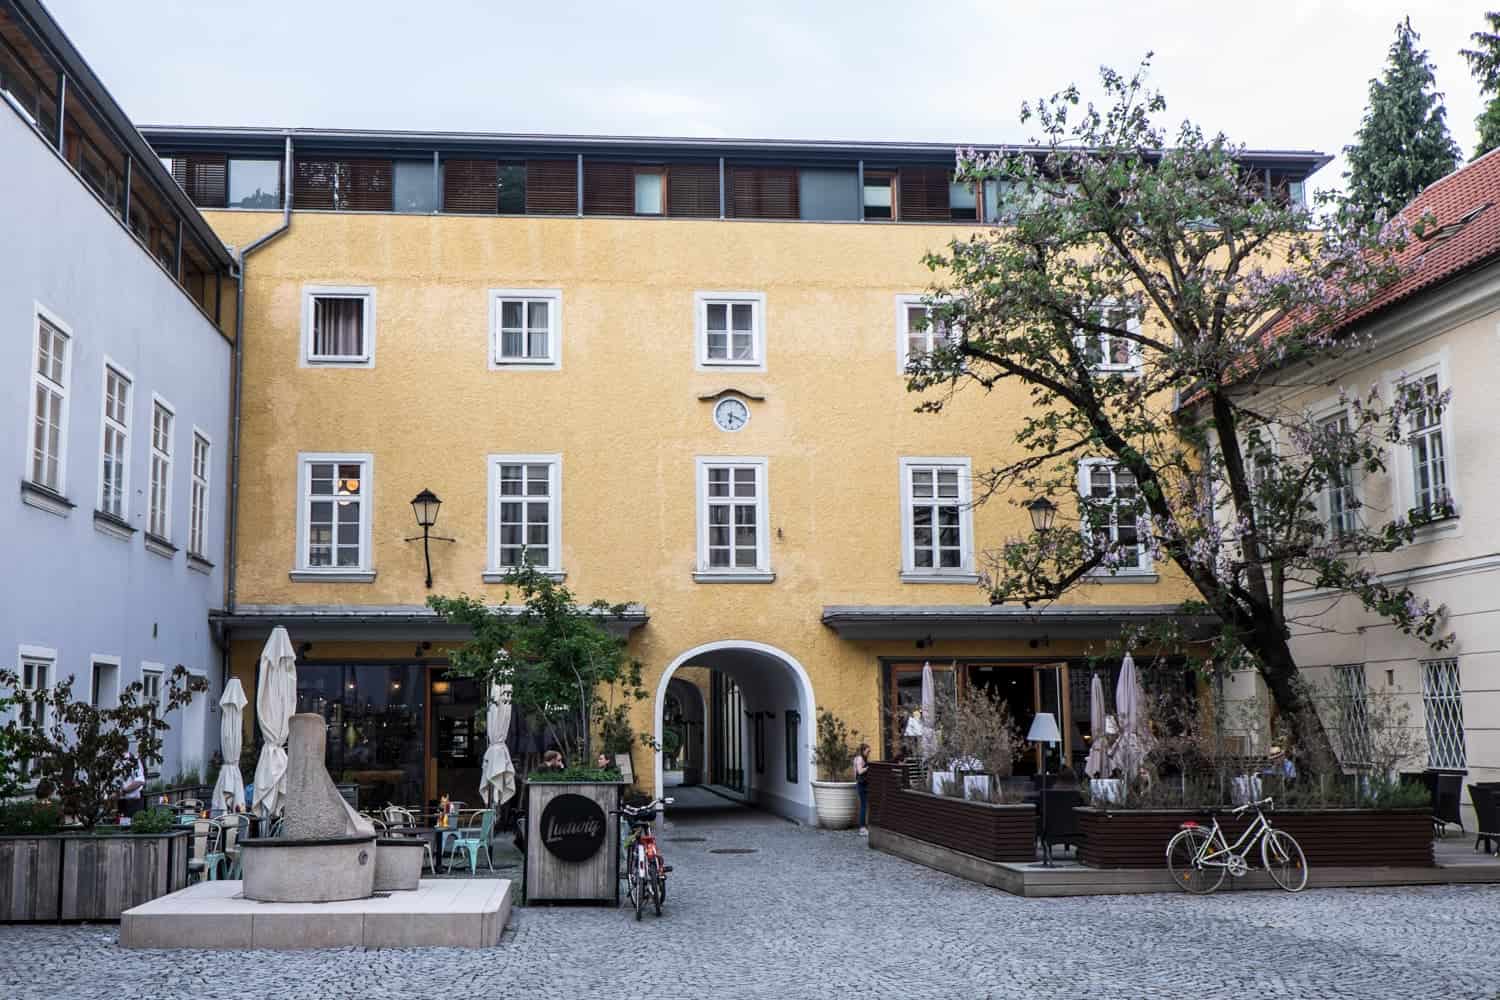 The modern architecture in Salzburg, Austria